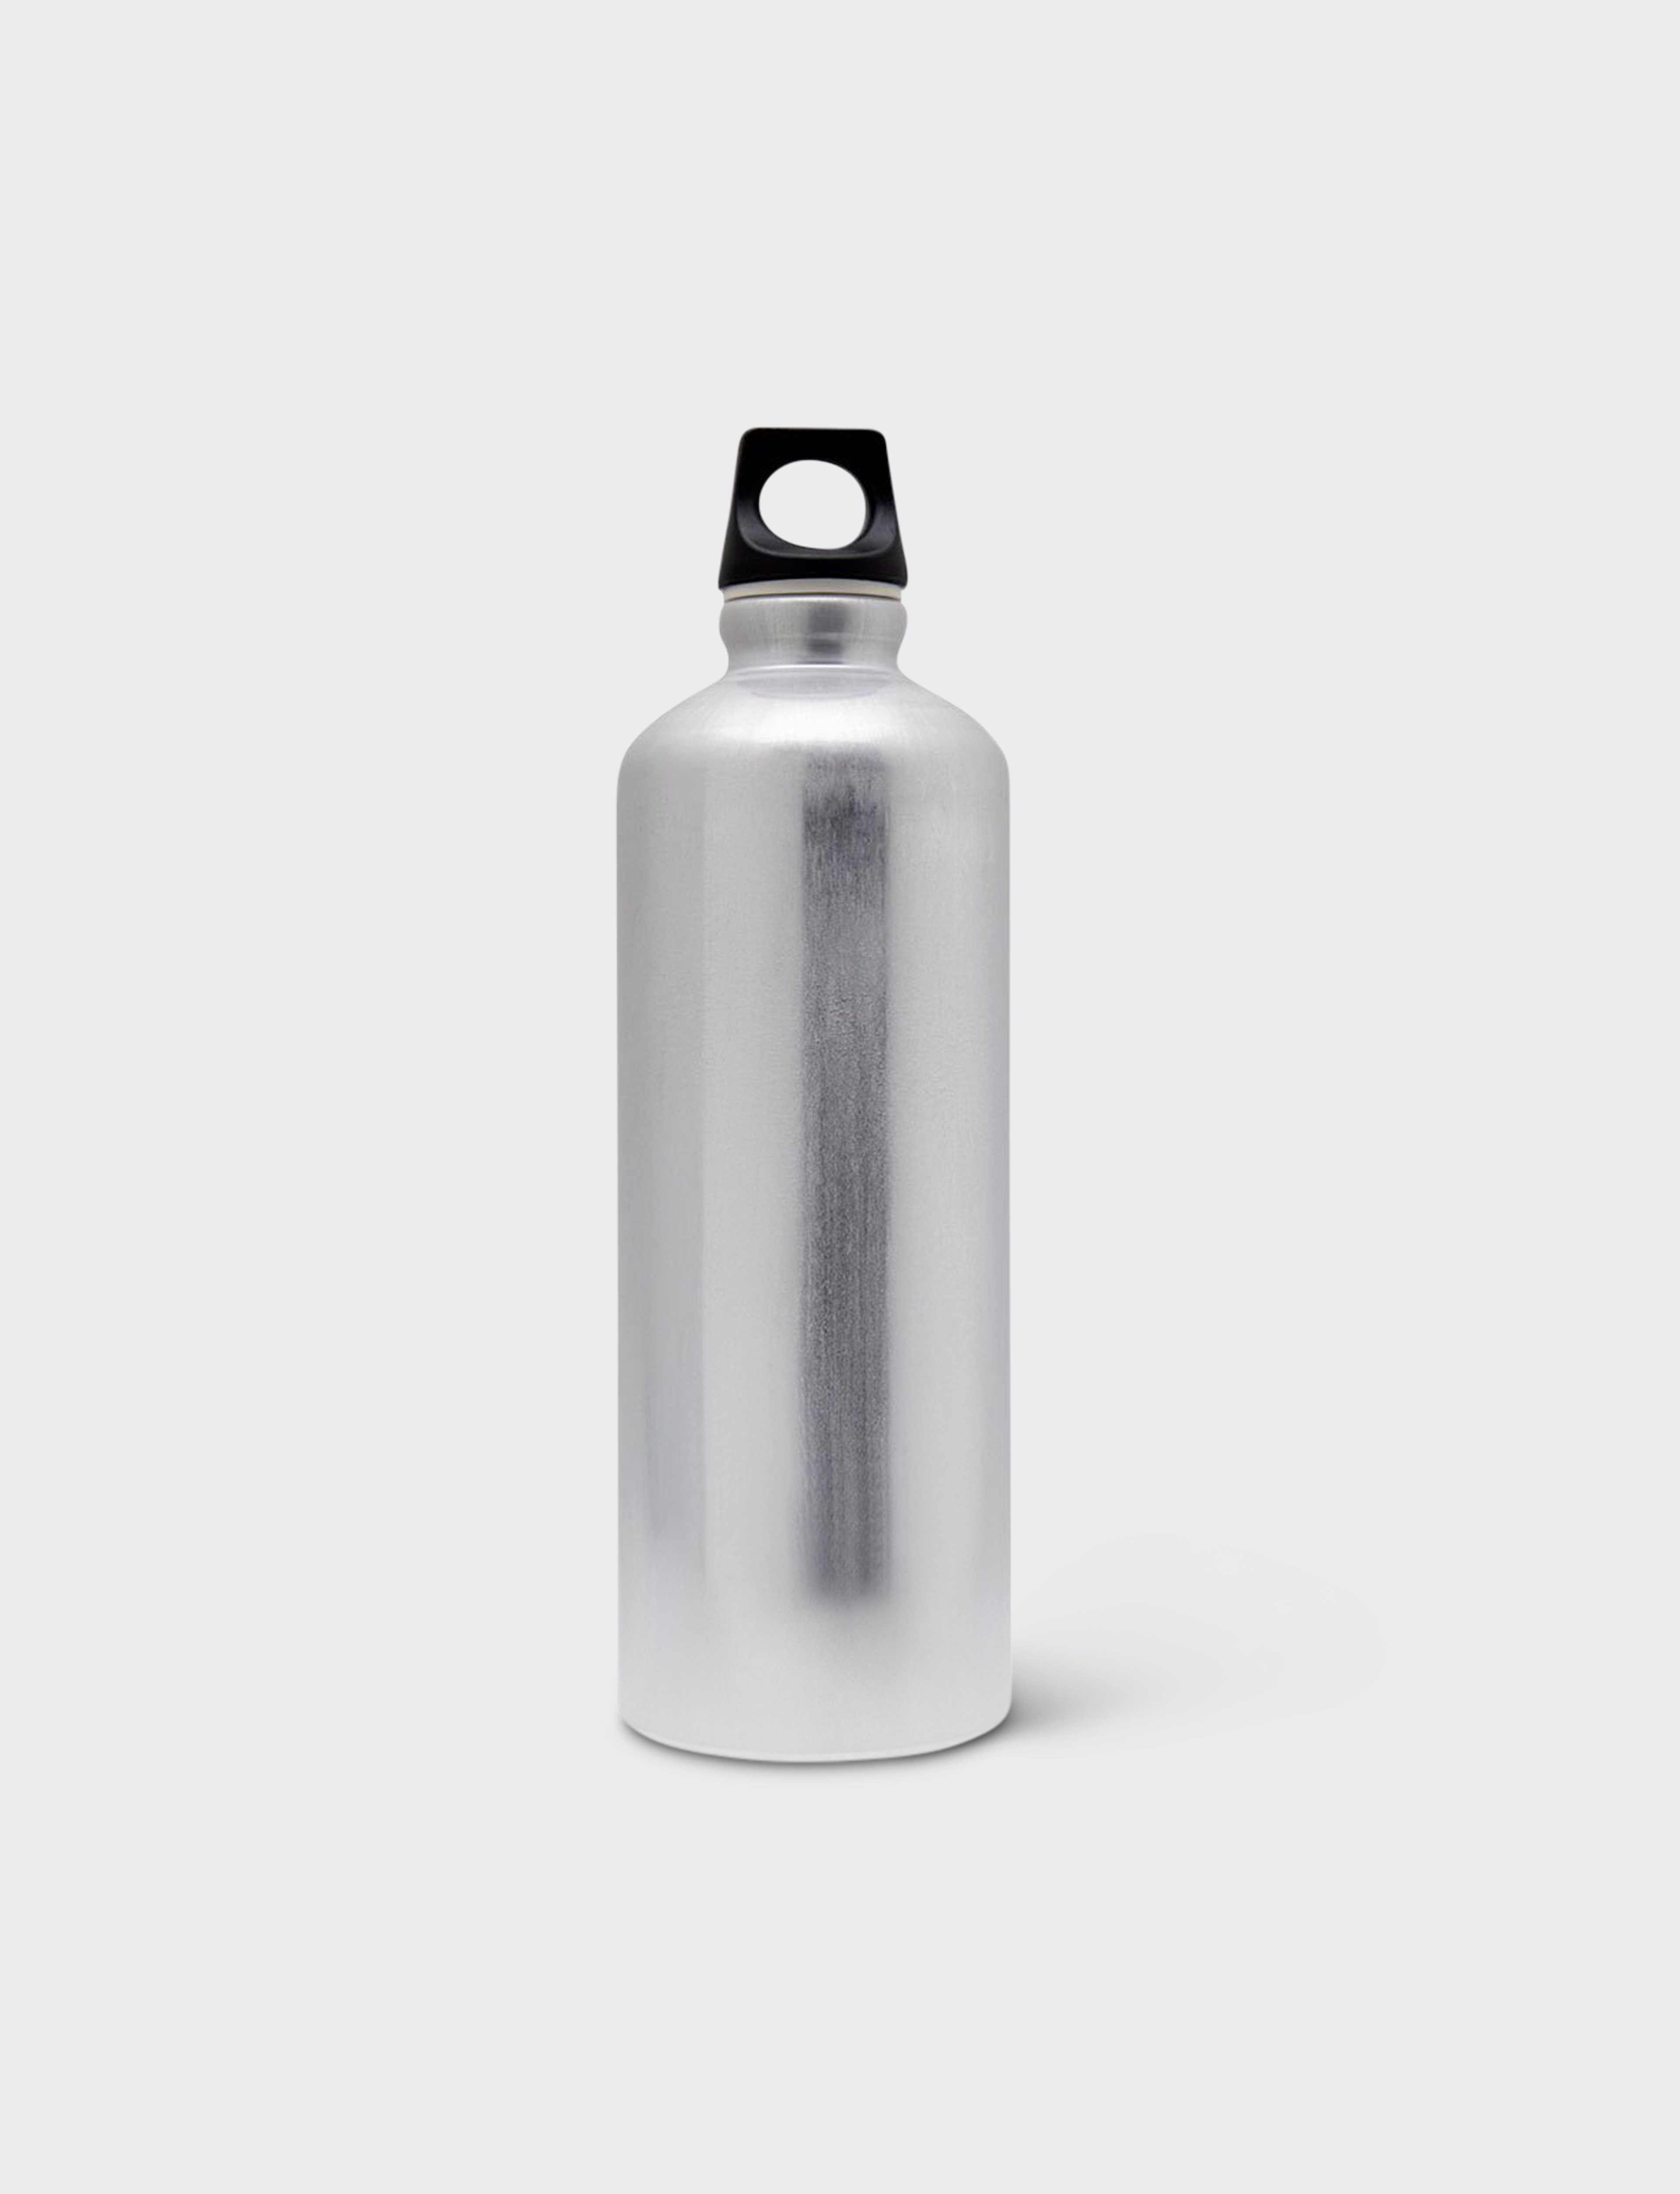 Recycled Aluminum Bottle